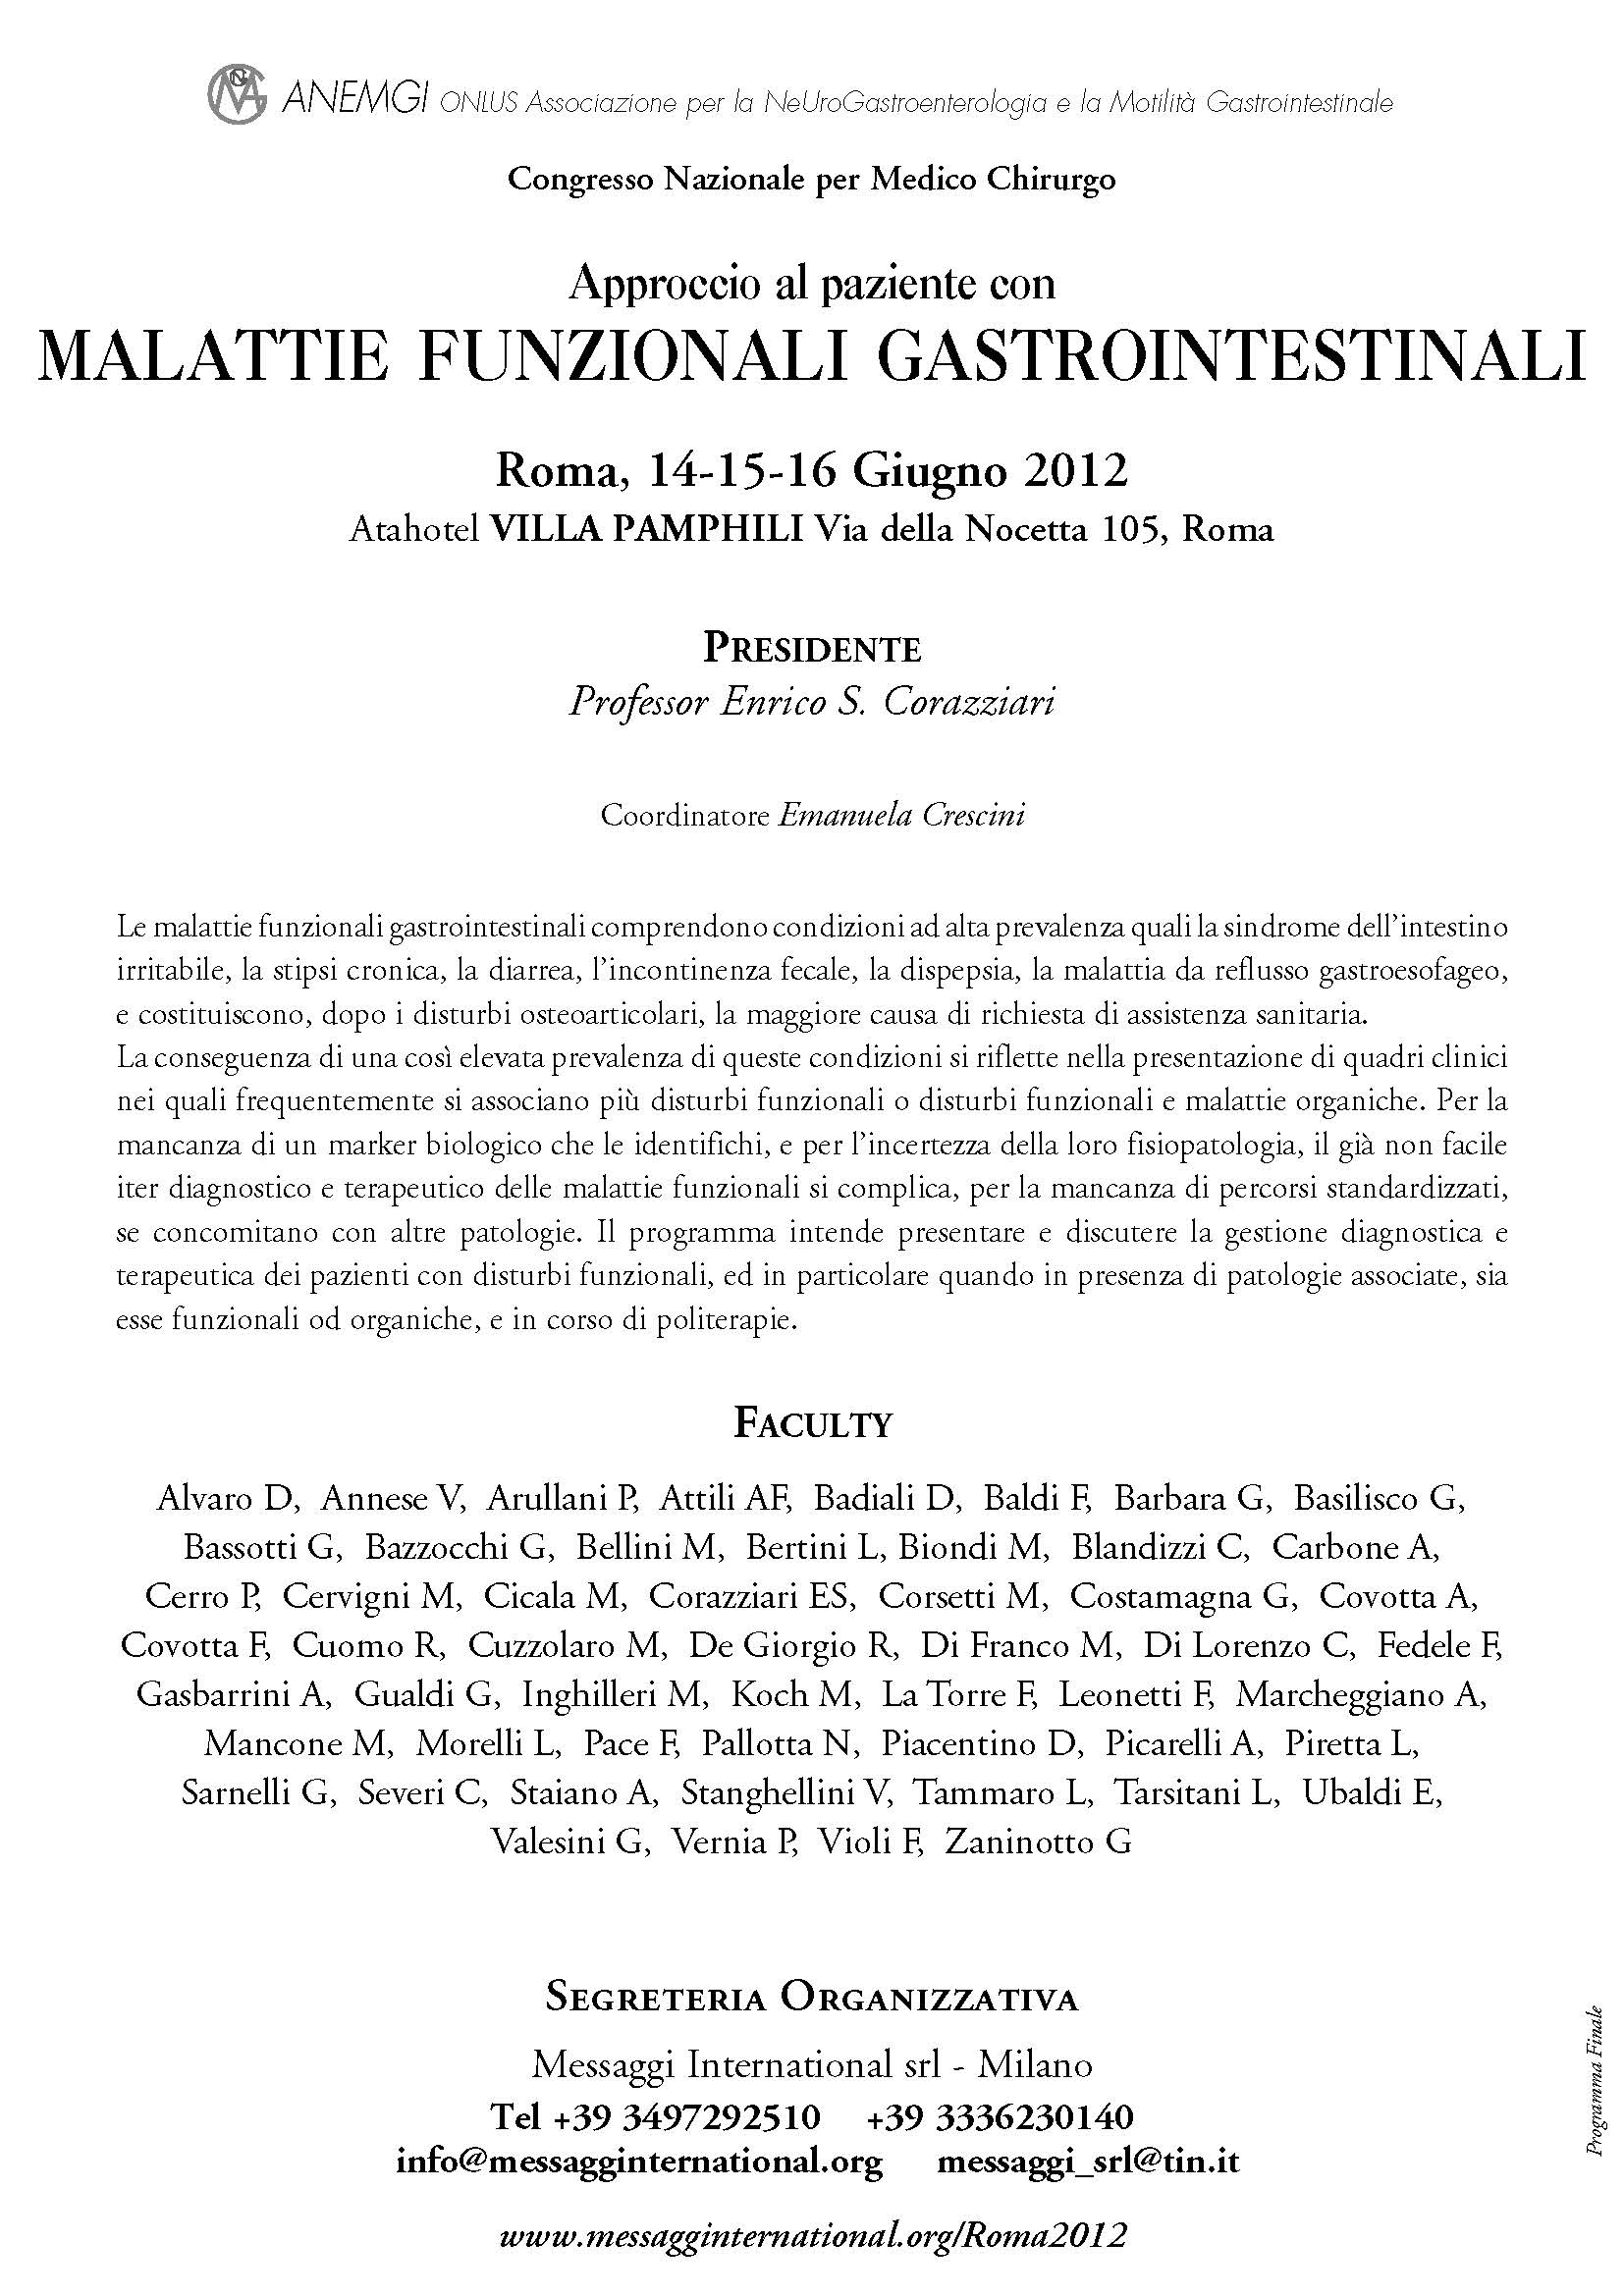 Malattie Funzionali Gastrointestinali Roma 2012